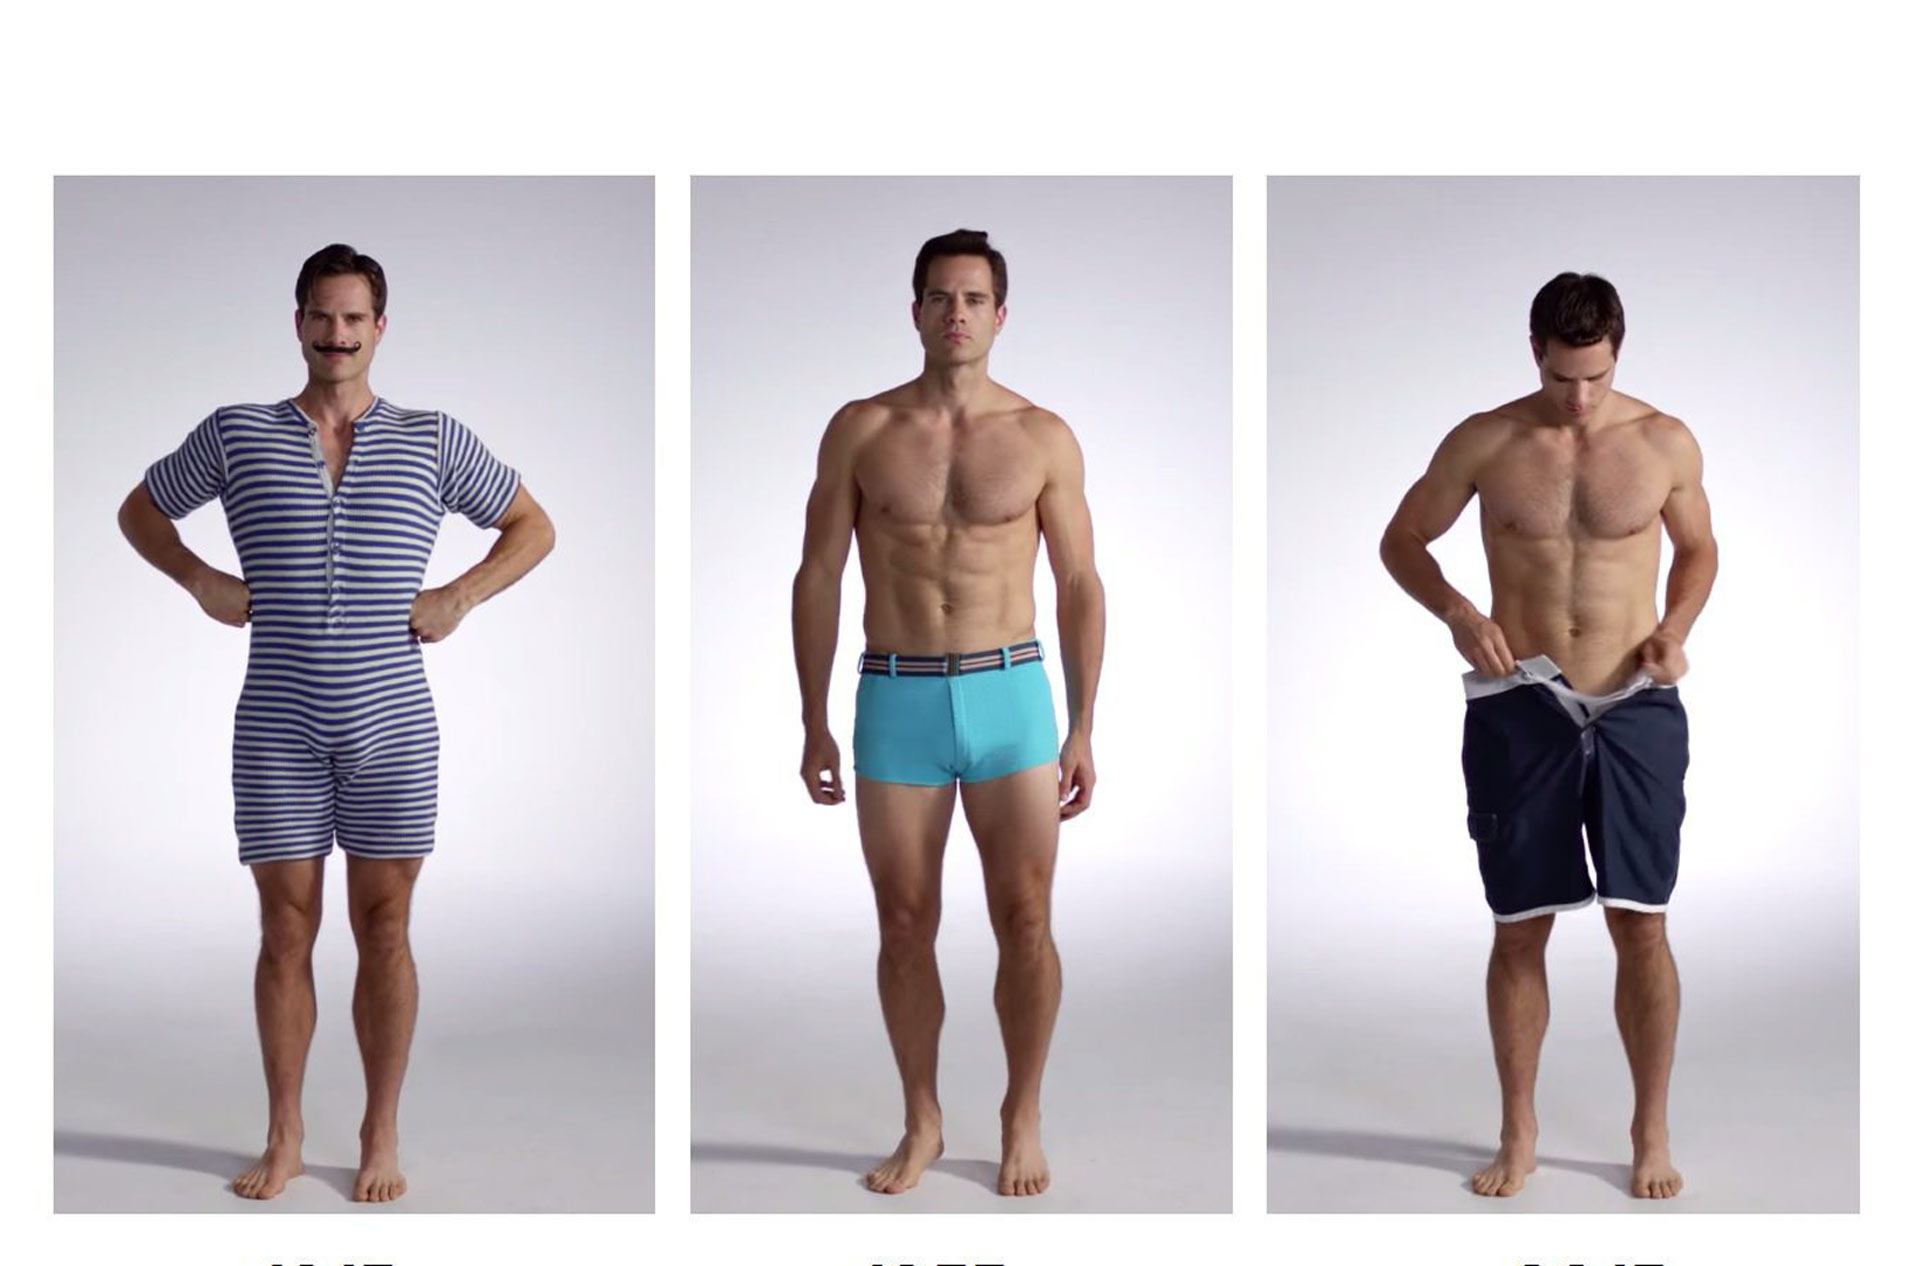 Los trajes de baño para hombres han cambiado desde hace 100 años. Este video lo demuestra